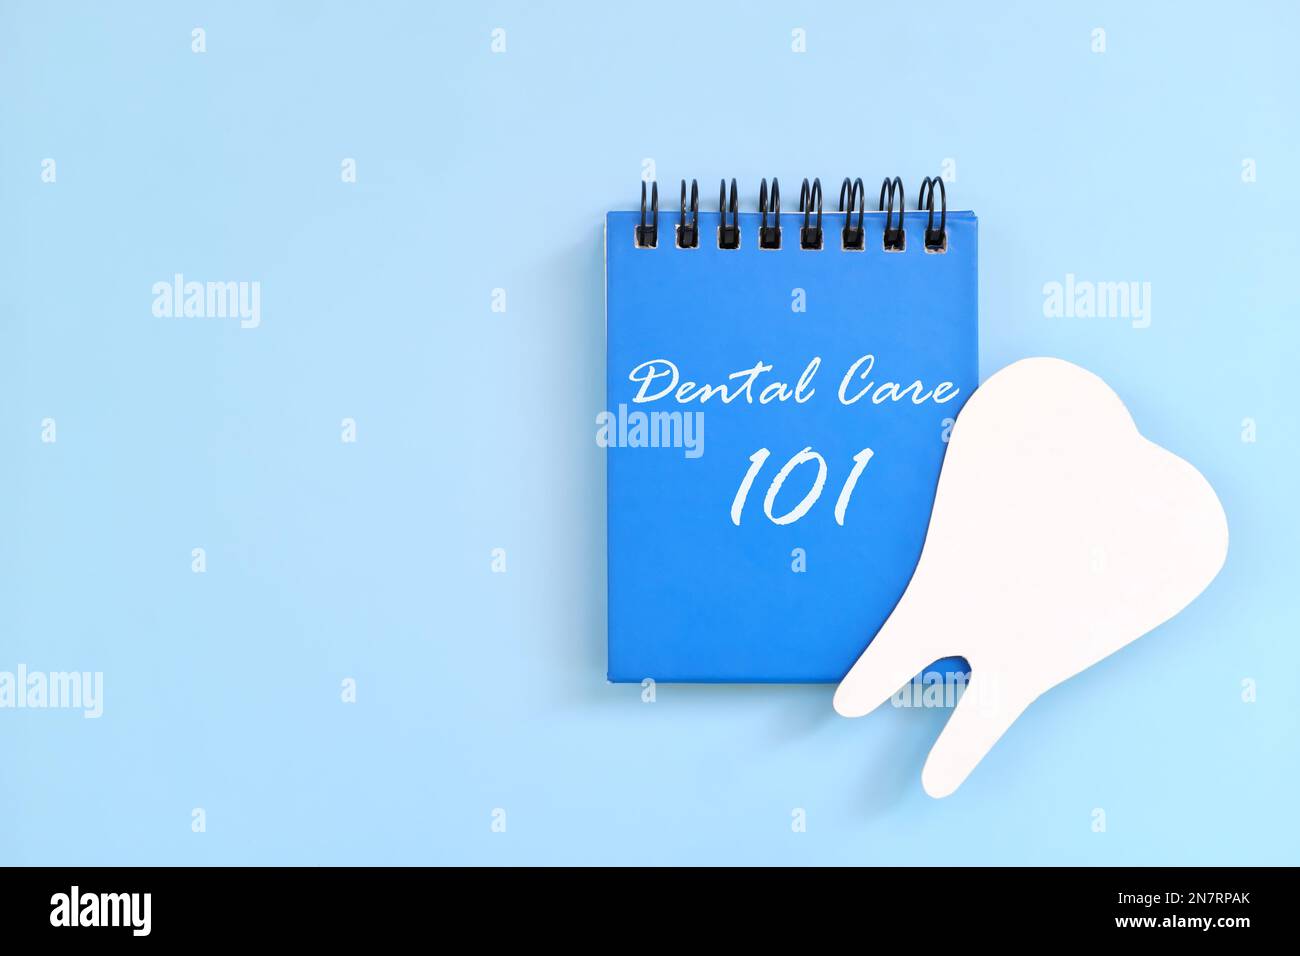 Zahnpflegeanleitung 101 auf blauem Notizblock oder Buch. Zahn- und Mundgesundheitskonzept. Stockfoto